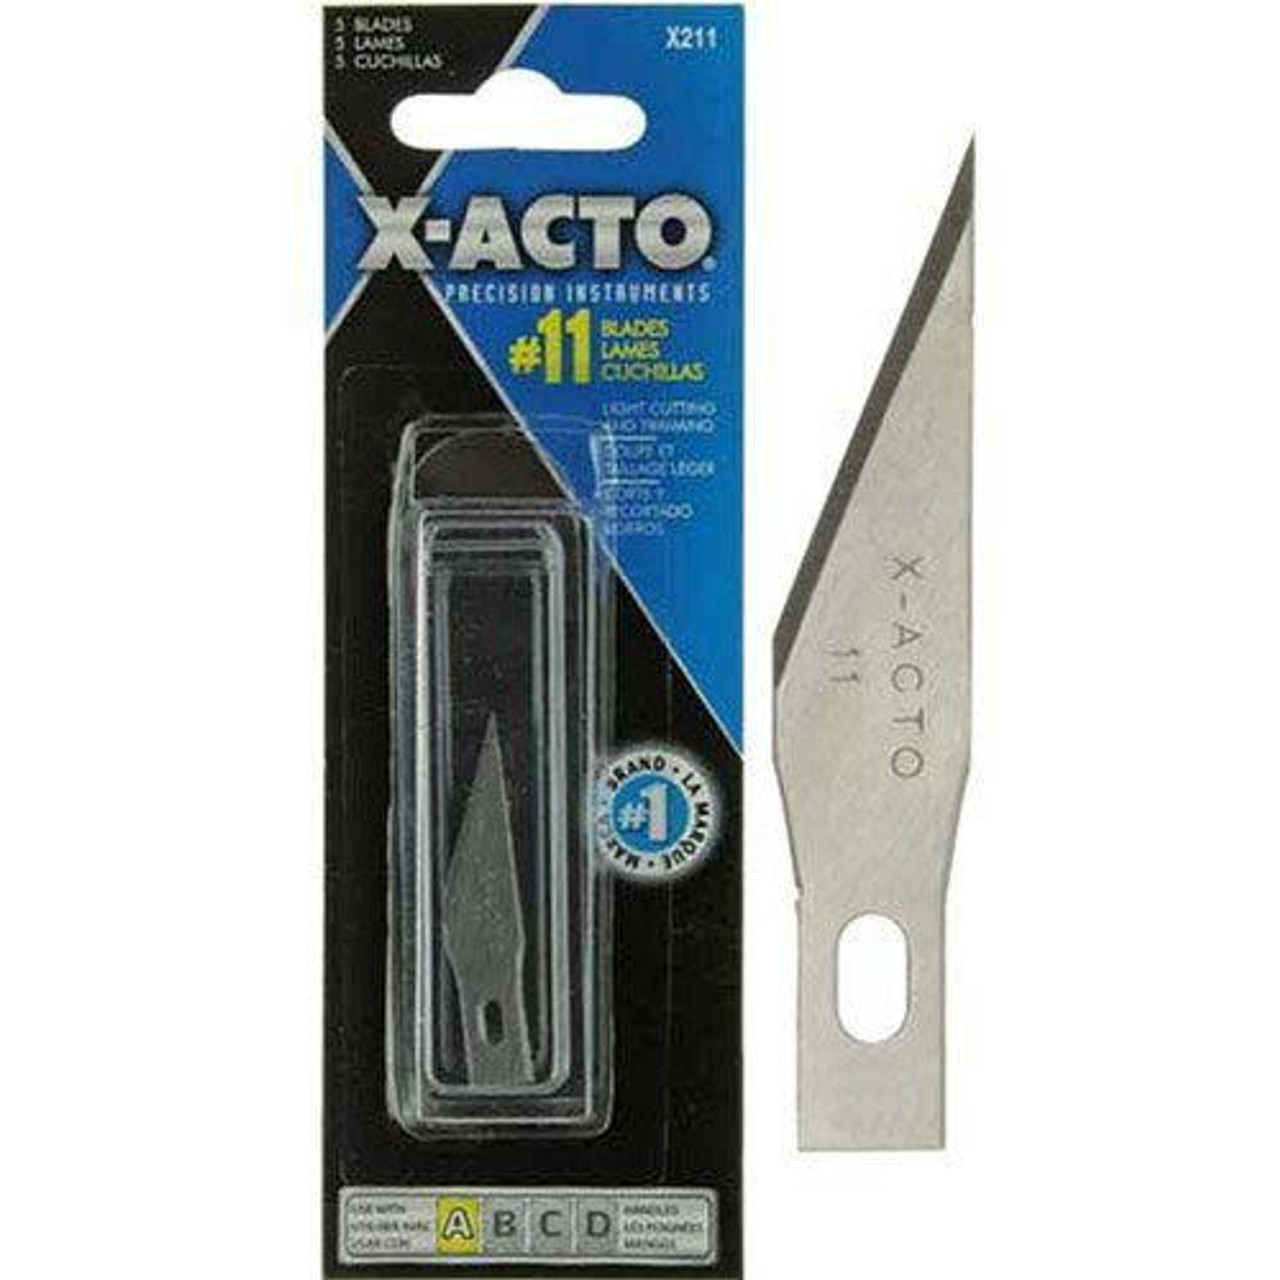 Xacto Blades - Z Series - #11 Blades - 5pk